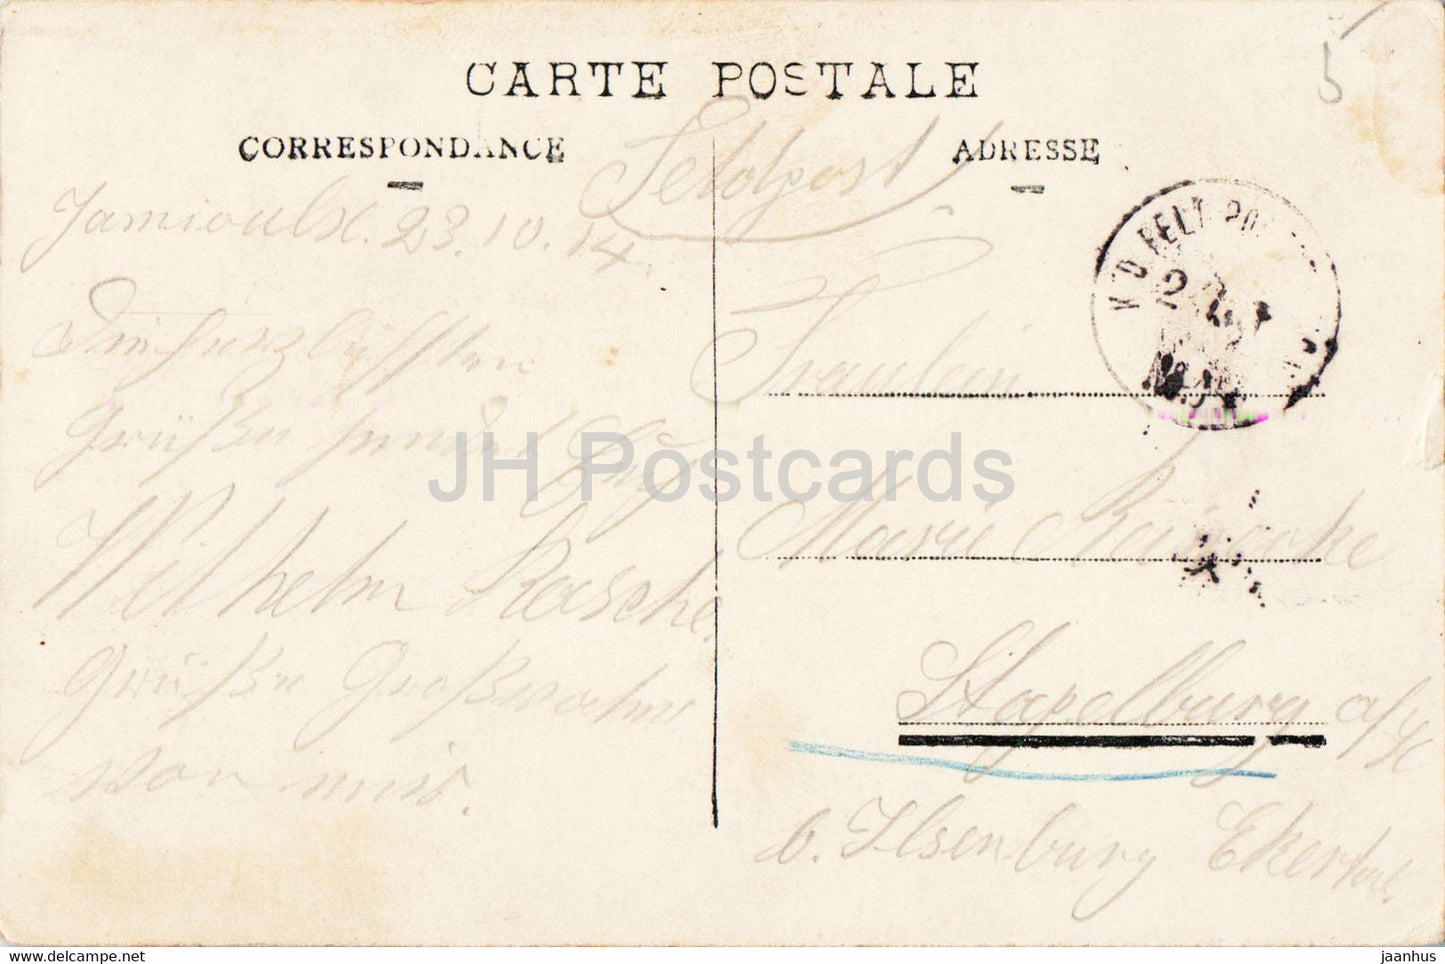 Bruxelles - Bruxelles - La Bourse - 12 - voiture ancienne - carte postale ancienne - 1914 - Belgique - occasion